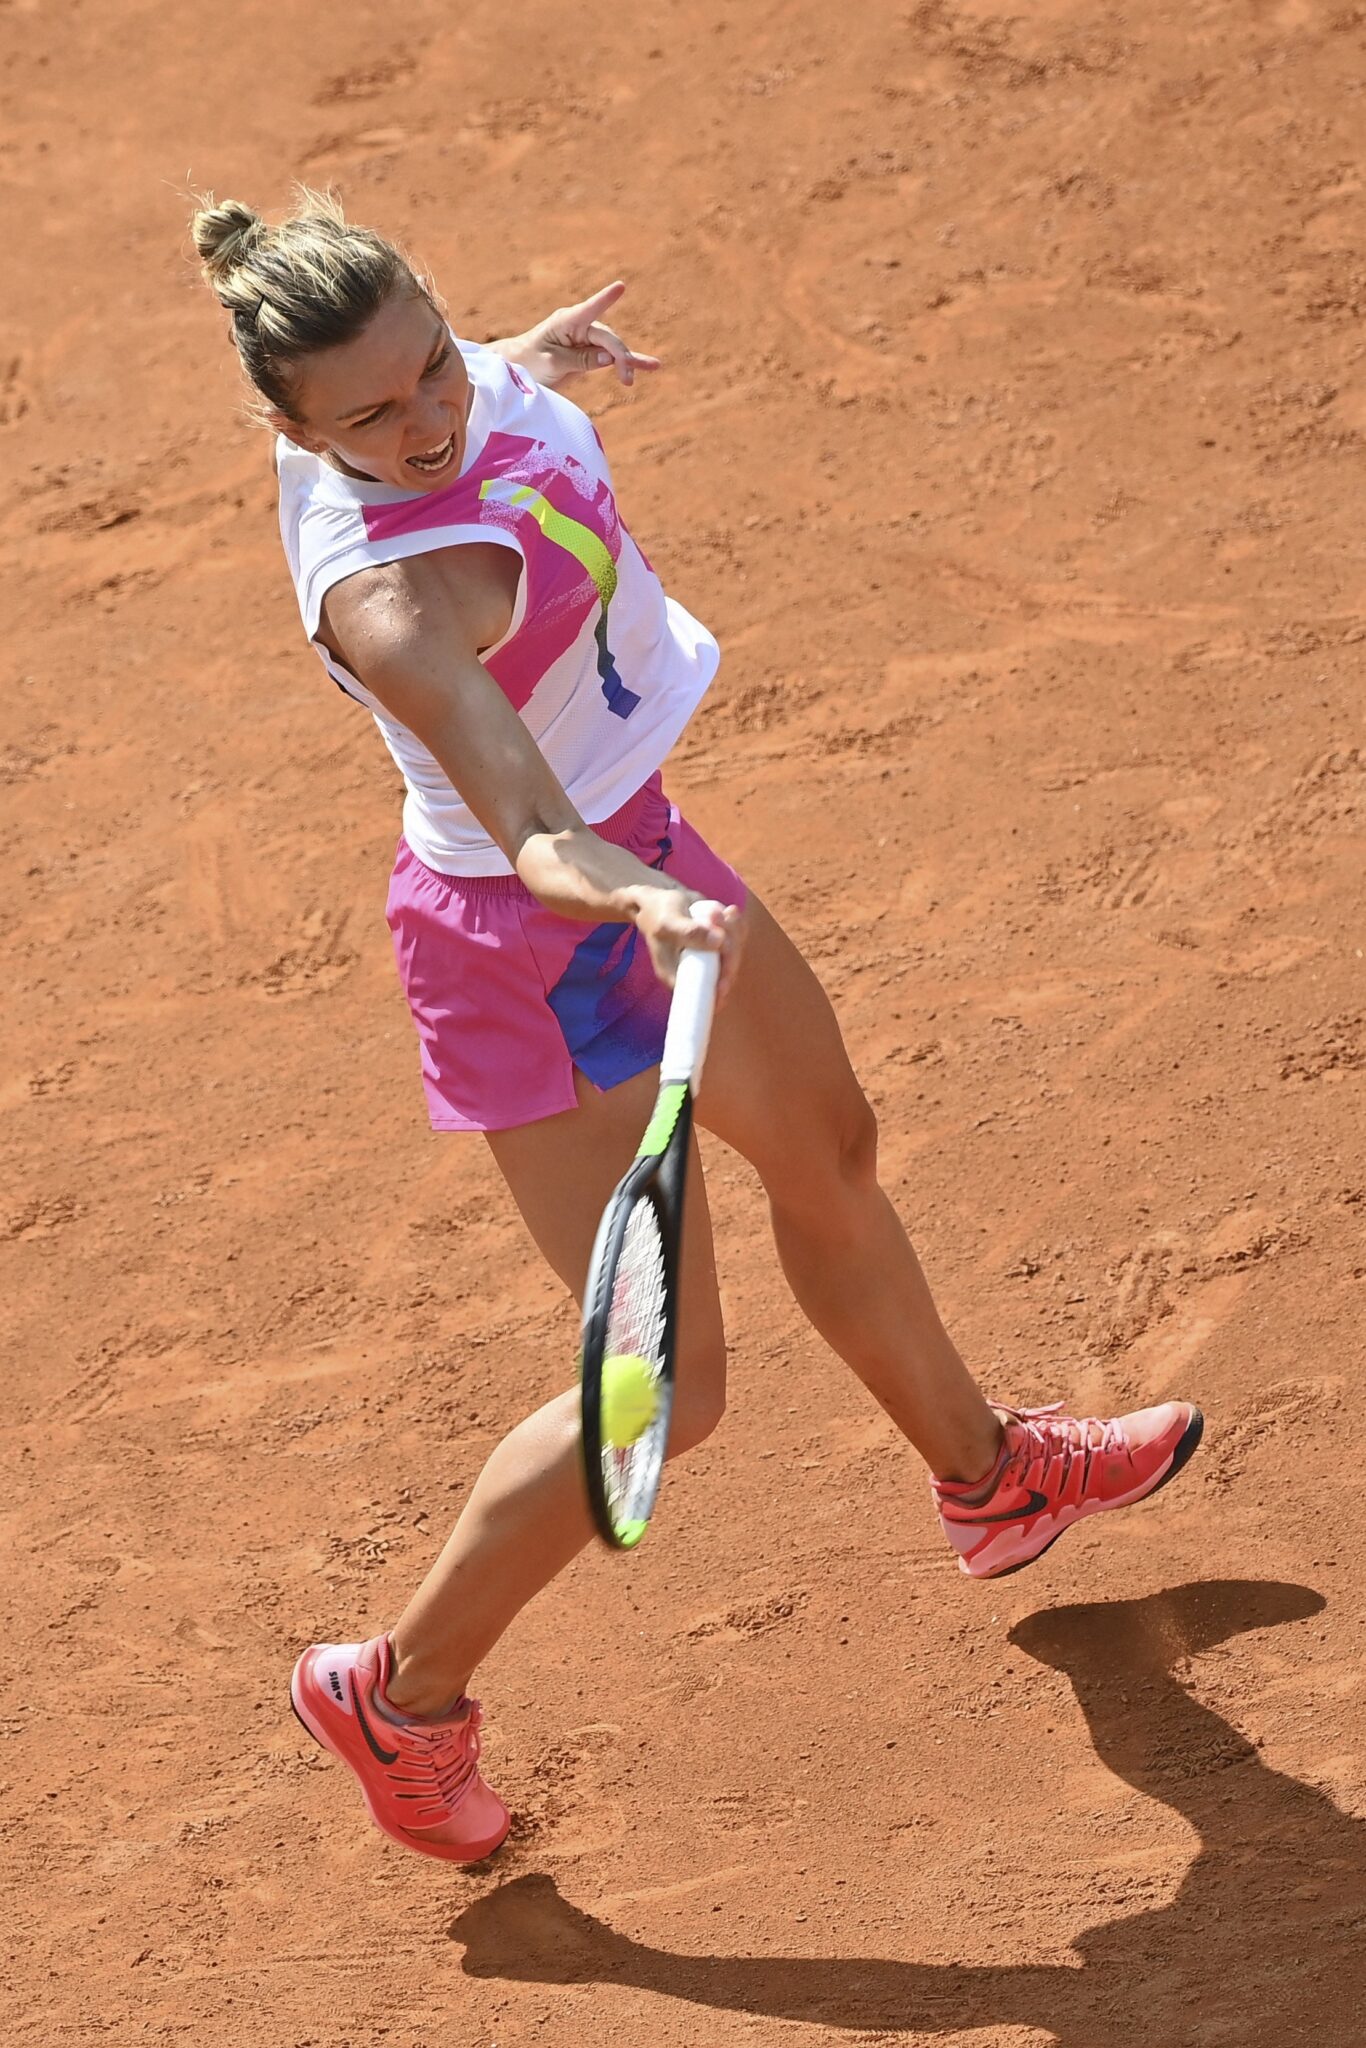 Rome Italian Open Tennis tournament semifinals